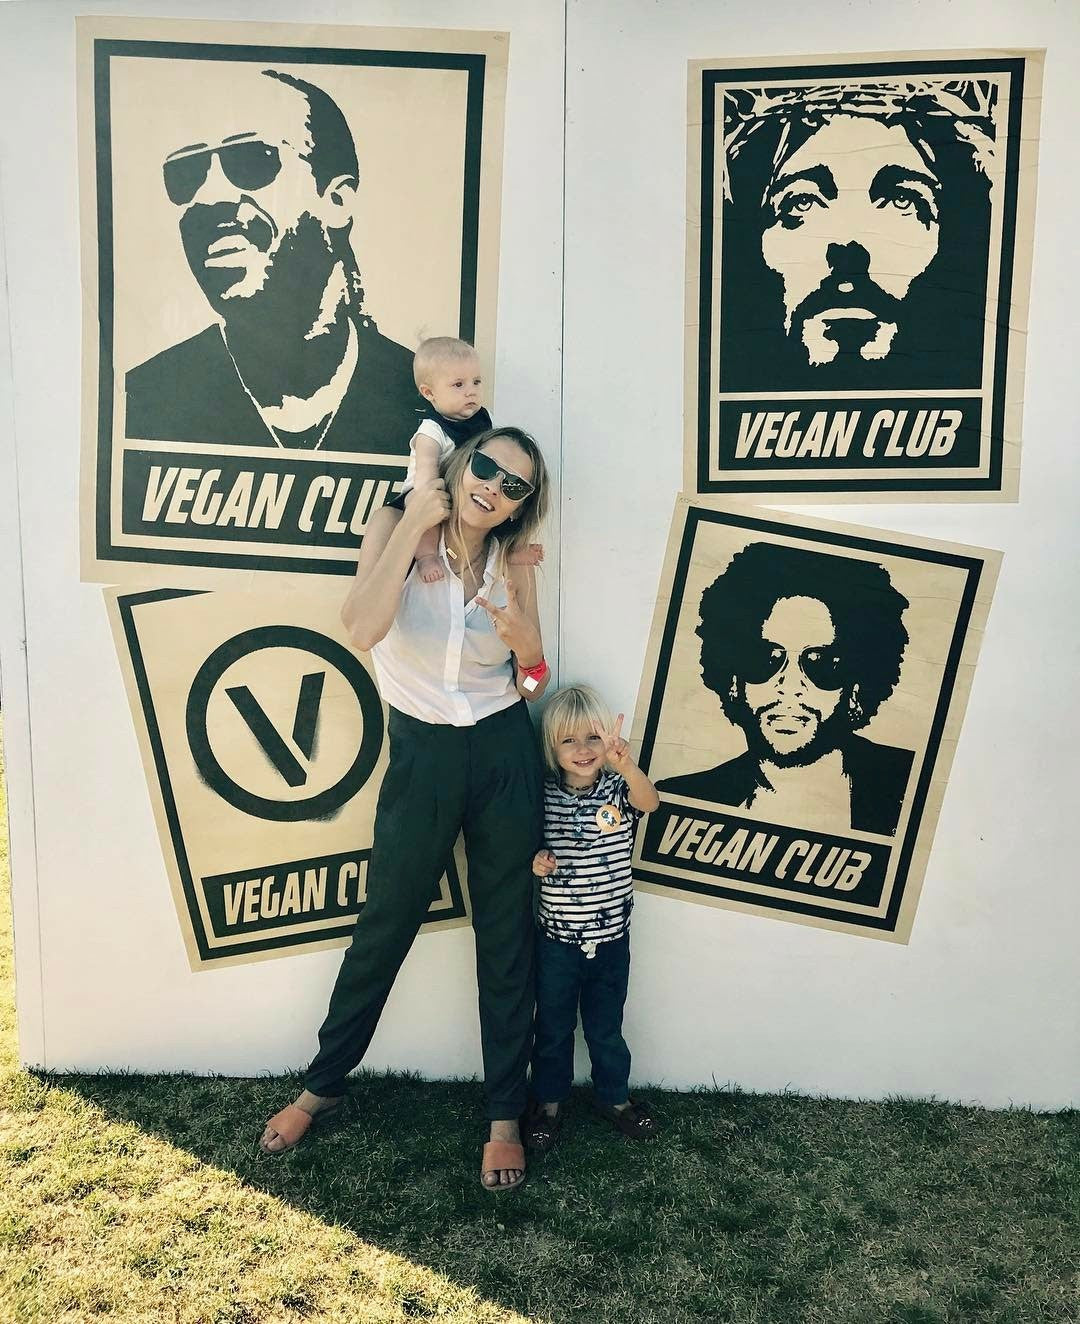 Street Art NewsPrint Poster Vegan Club featuring Stevie Wonder art by LeFou - model @teresapalmer